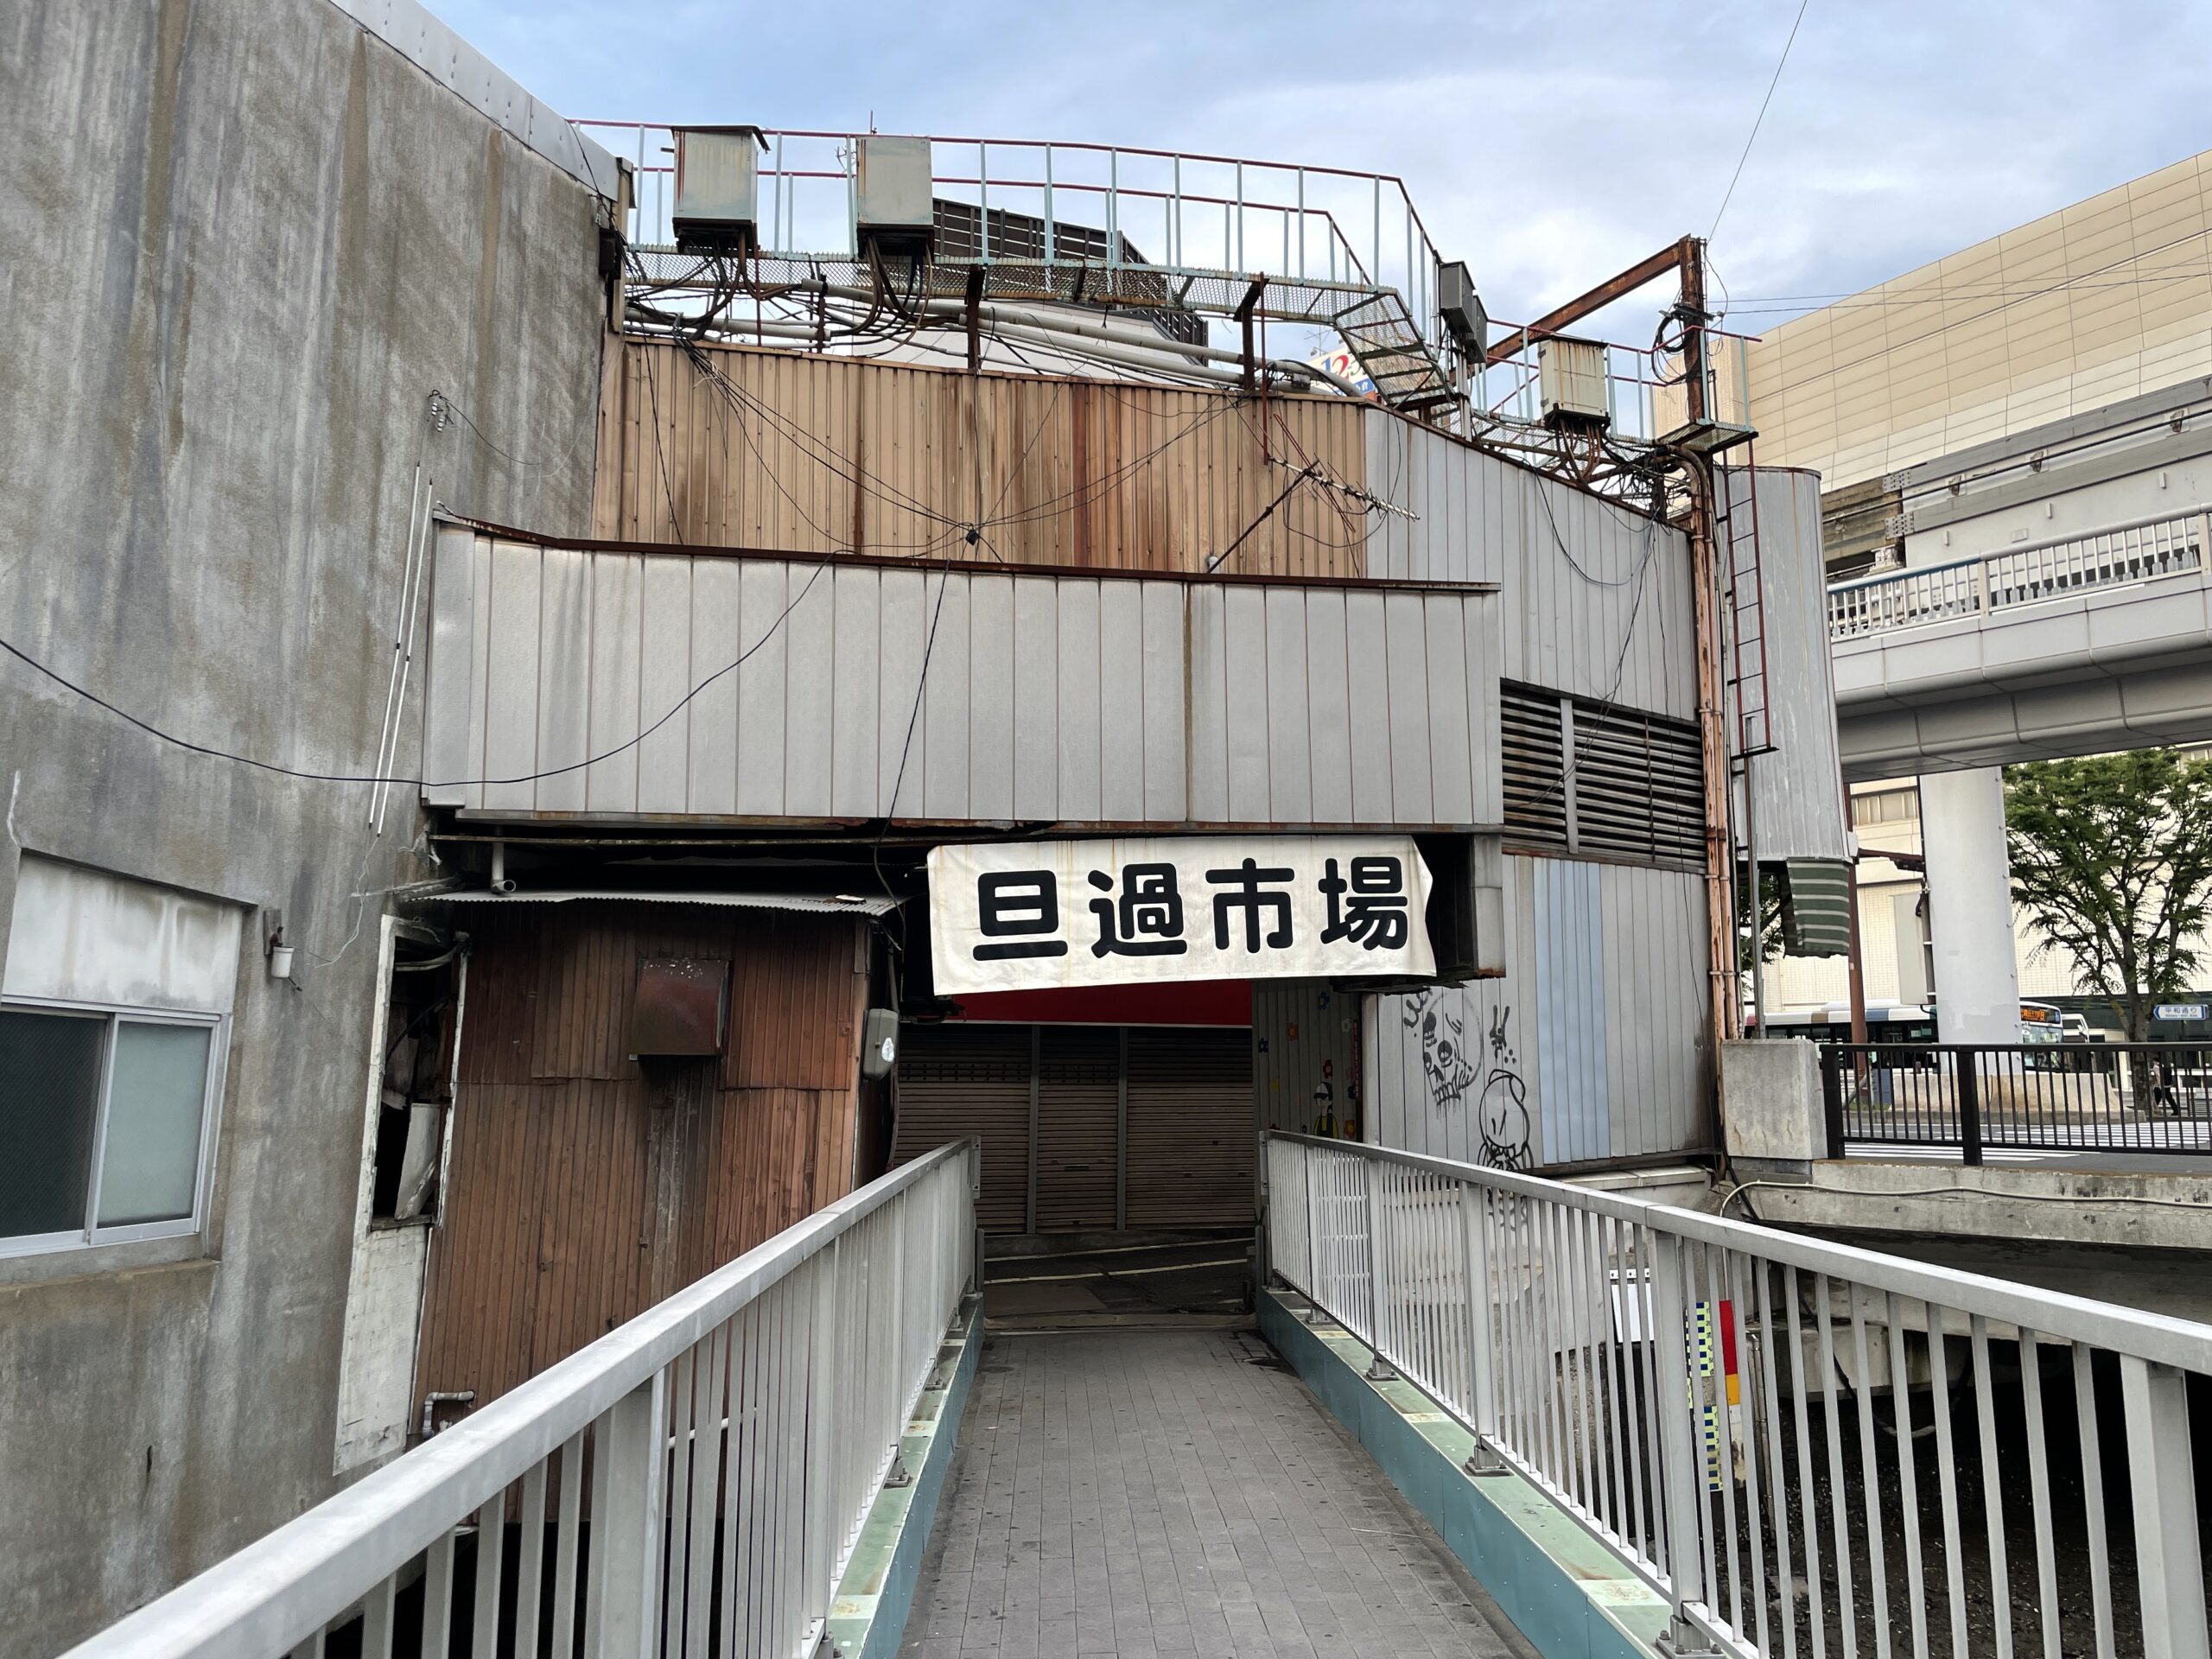 Eingang des Tanga-Marktes in Kitakyushu